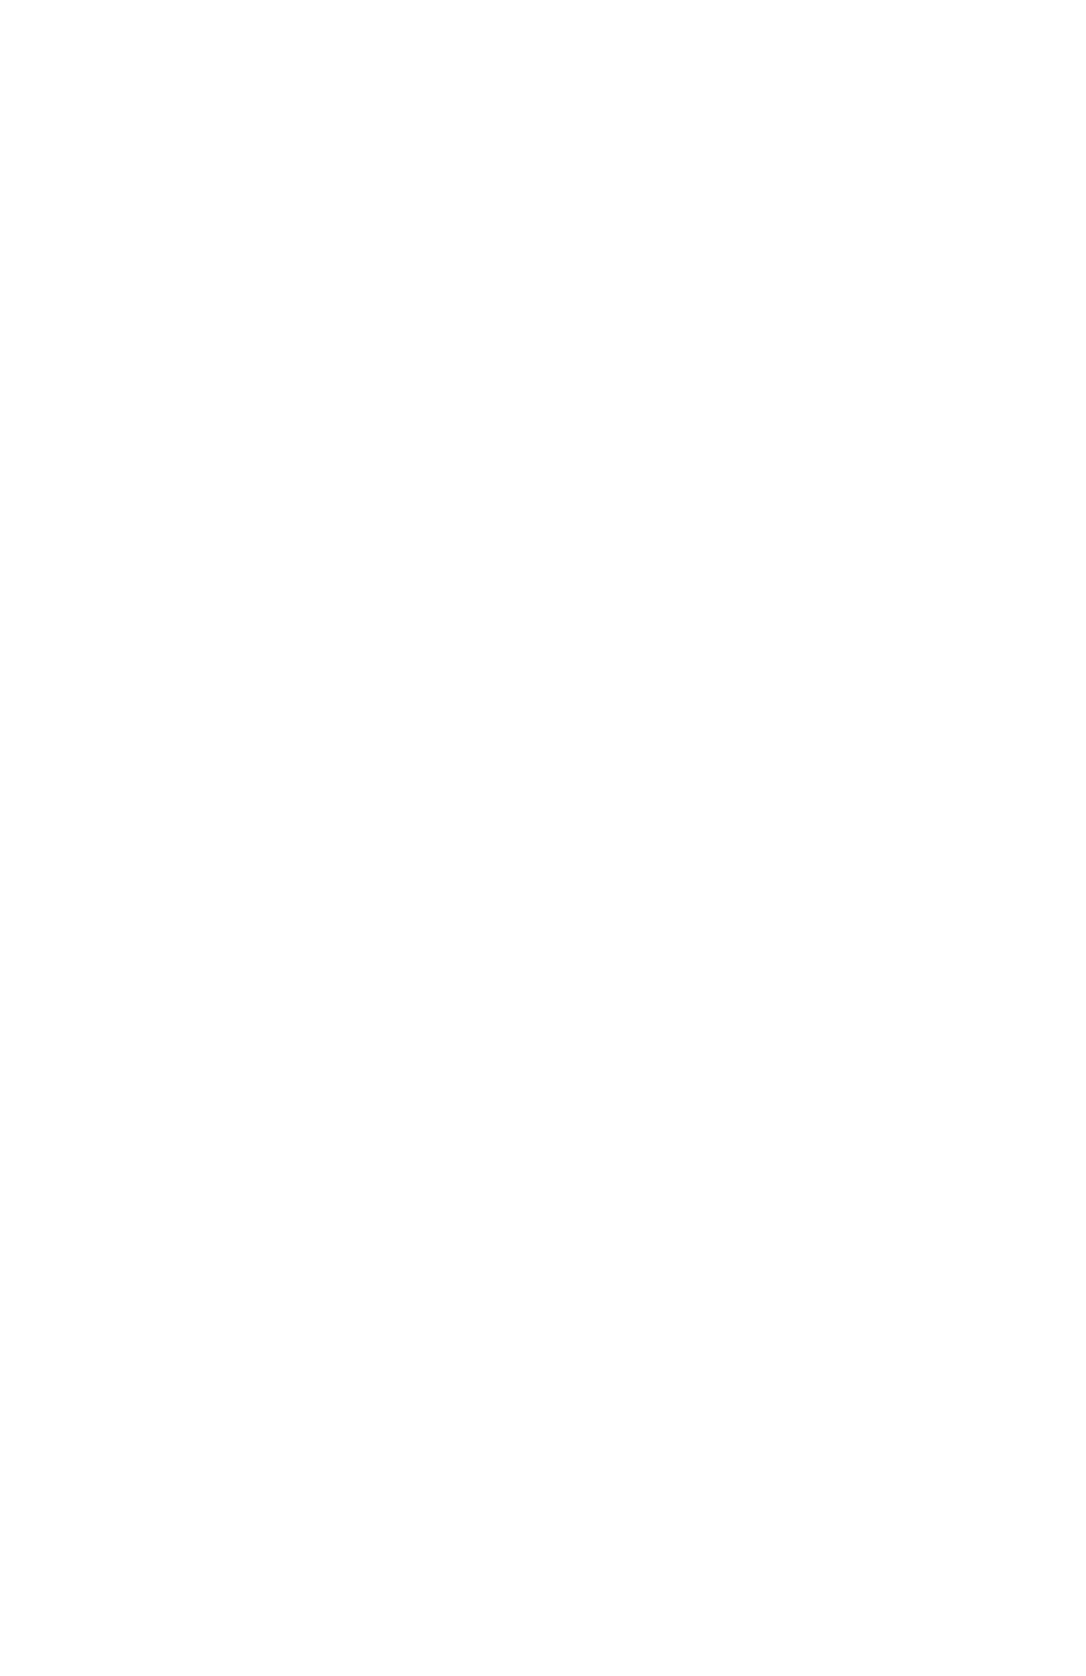 Gaston’s Salon & Spa | New Braunfels, TX